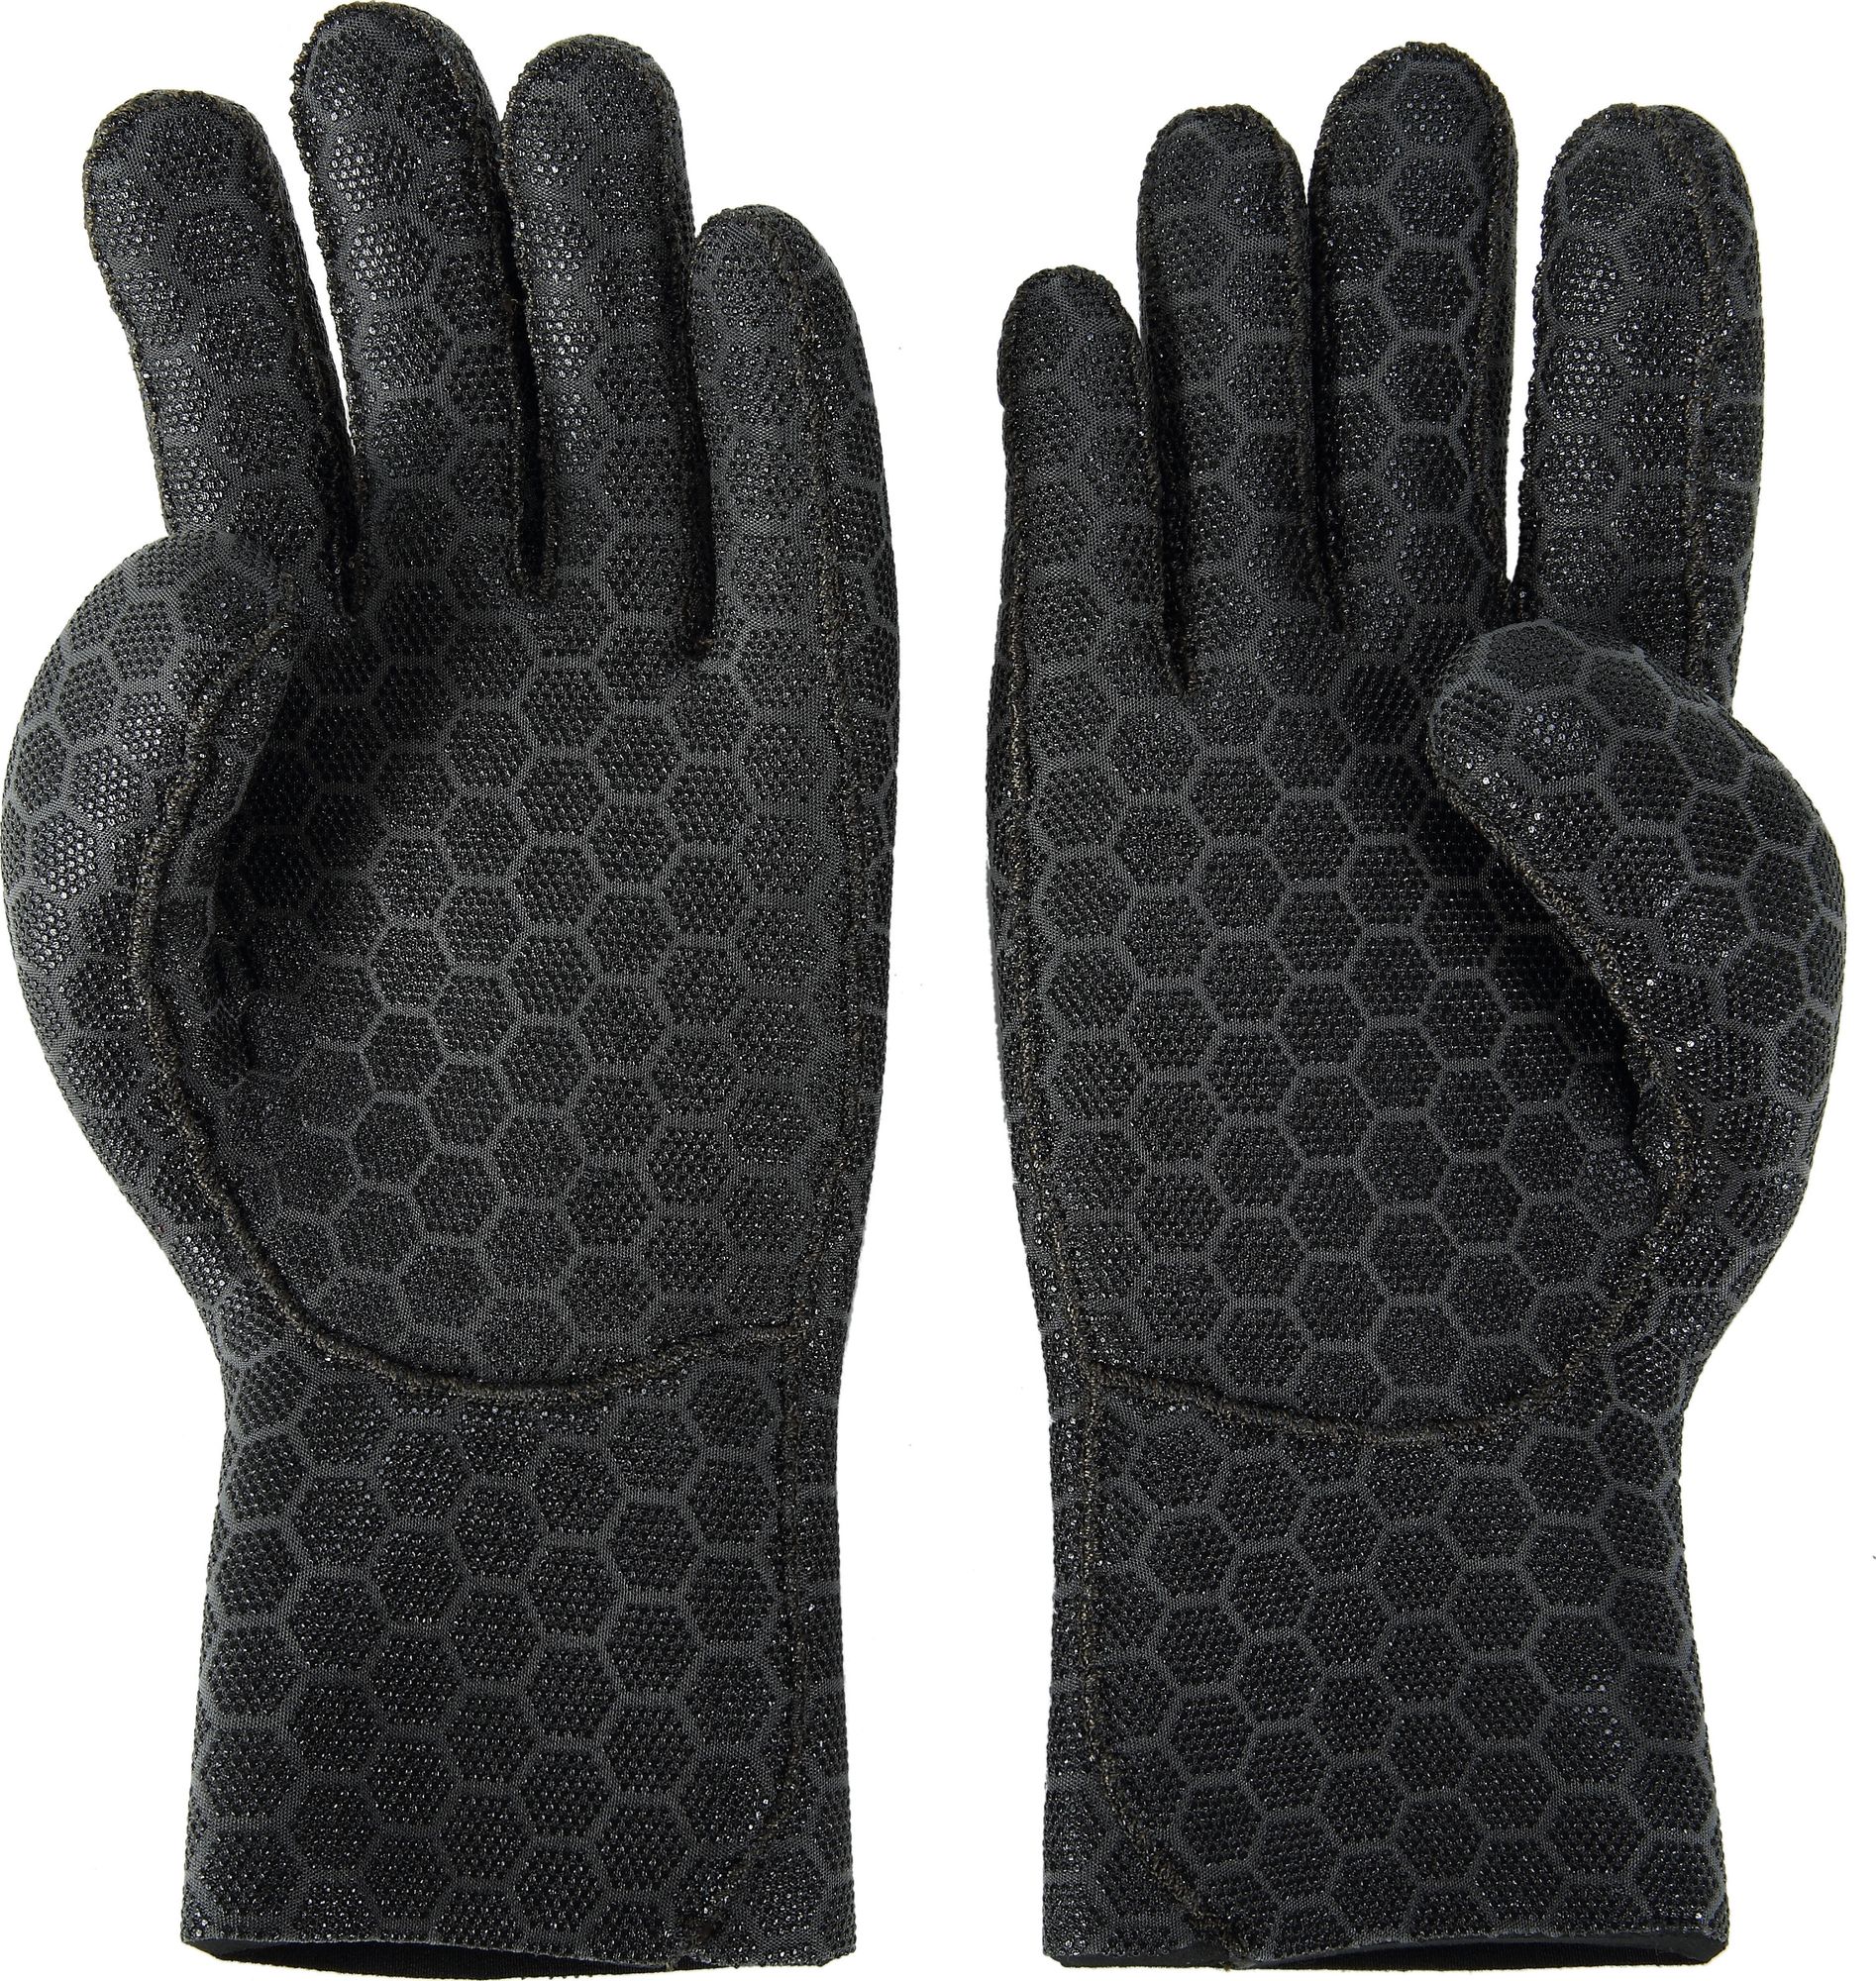 High Stretch Glove 3.5mm - Scuba, Snorkelling, Freediving